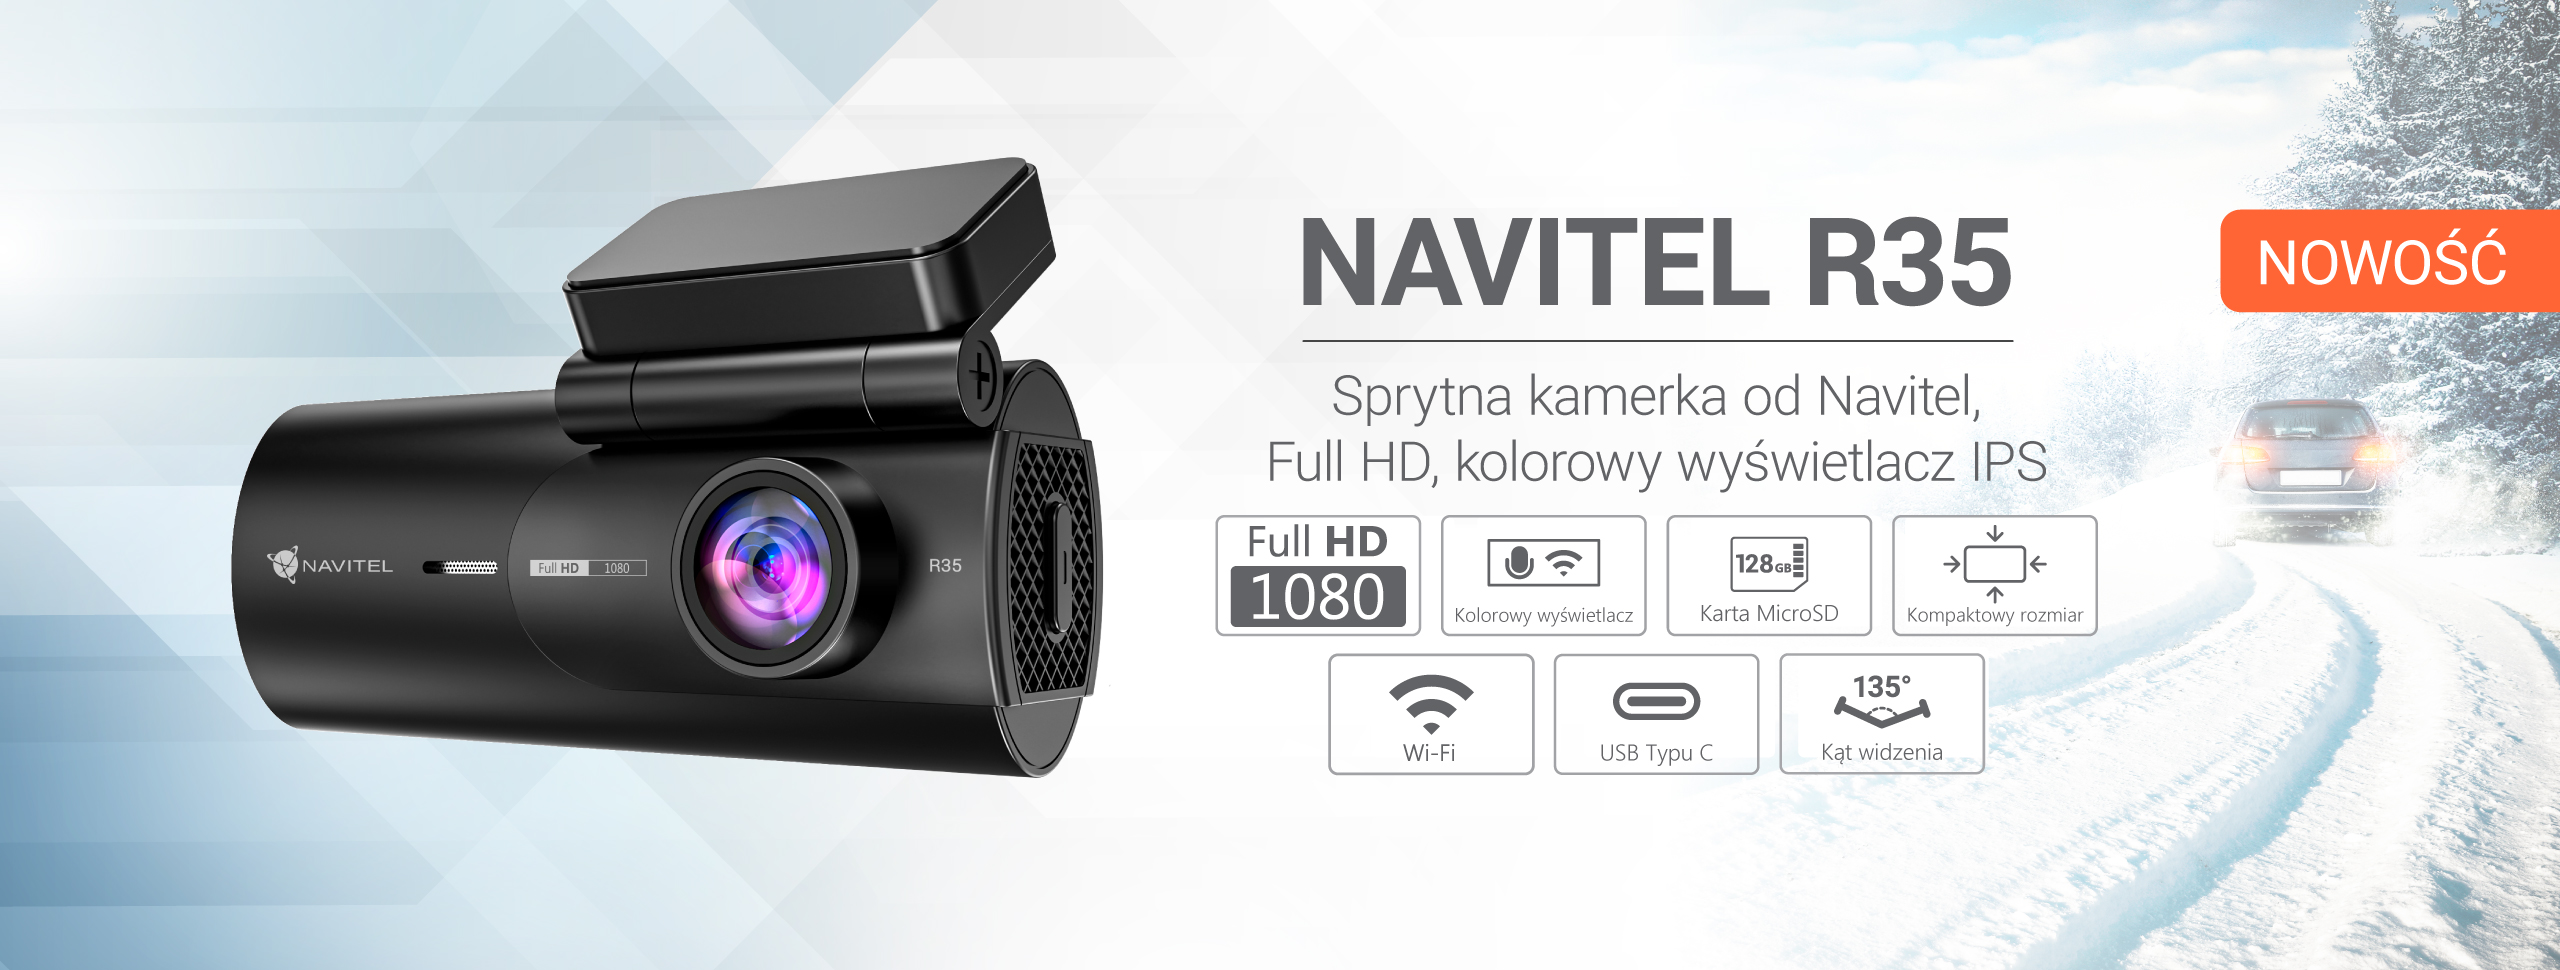 NAVITEL R35 – zaawansowany, designerski wideorejestrator z kolorowym wyświetlaczem za 199 zł